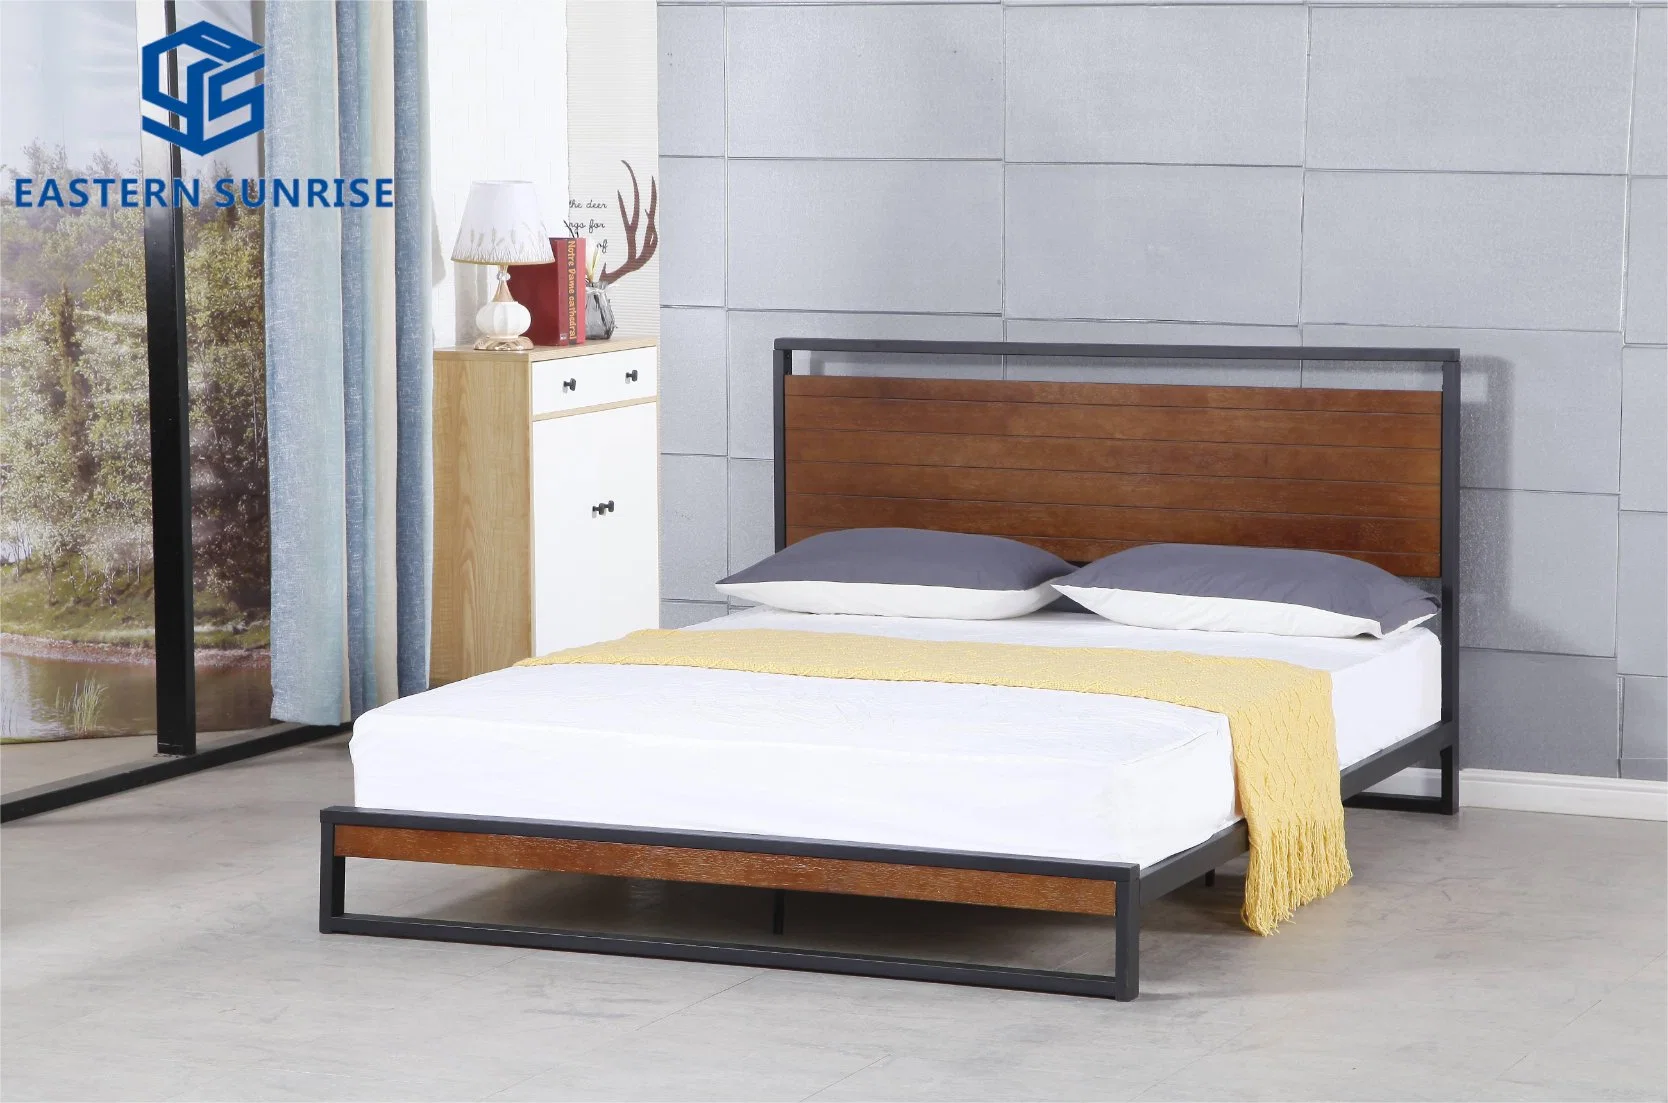 Diseño moderno cabecero de madera y metal Inicio marco de la cama cama de acero